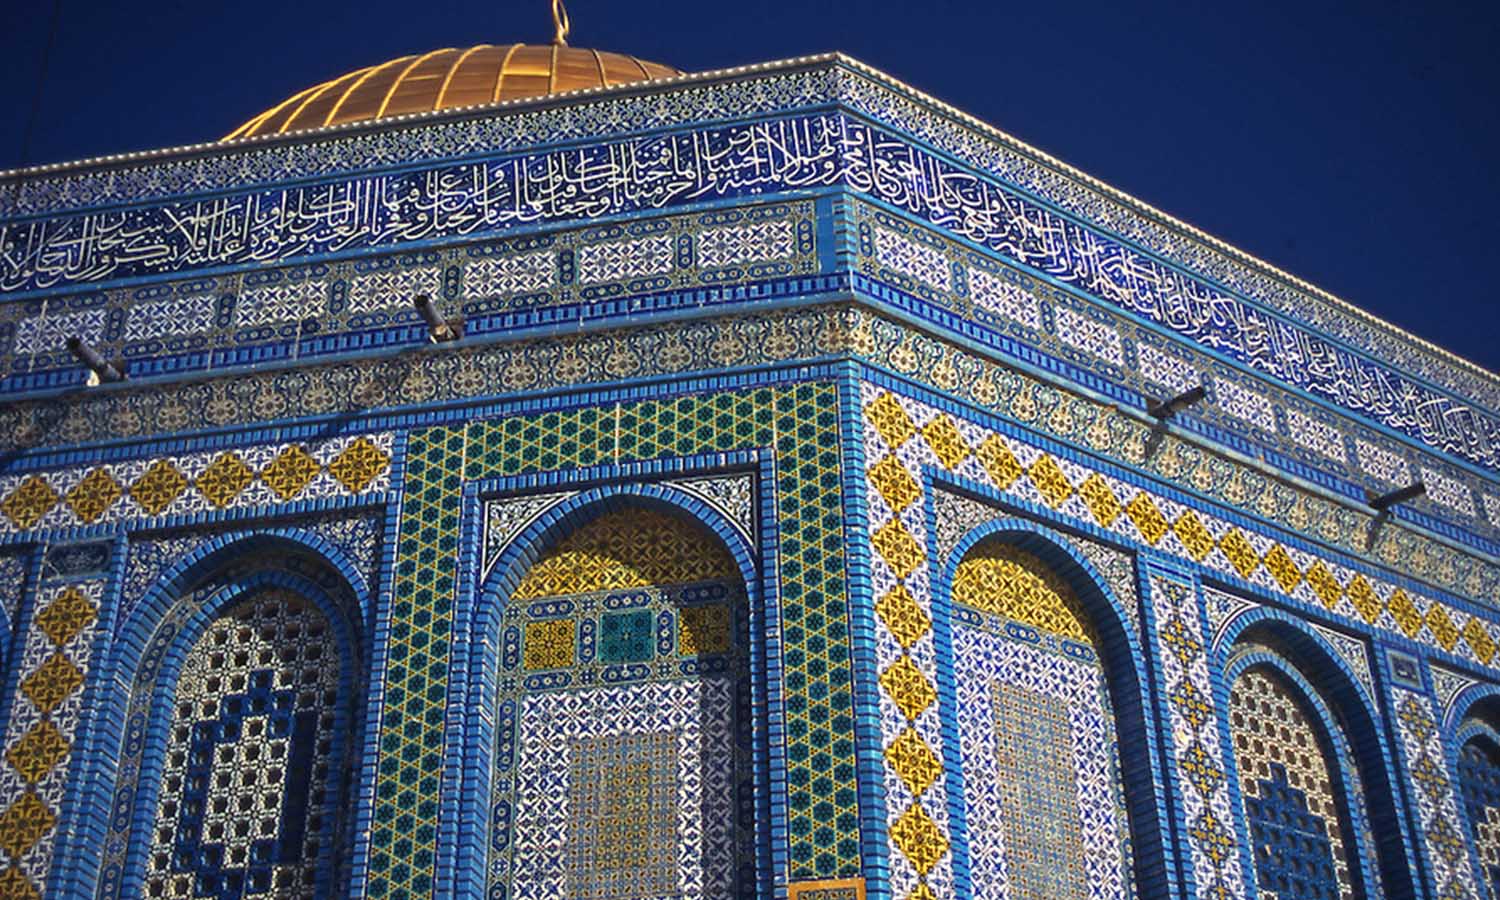 Арабские здания. Арабо мусульманские мечети. Марокко Гирих. Узбекистан голубая мечеть. Арабо-мусульманское искусство, архитектура.